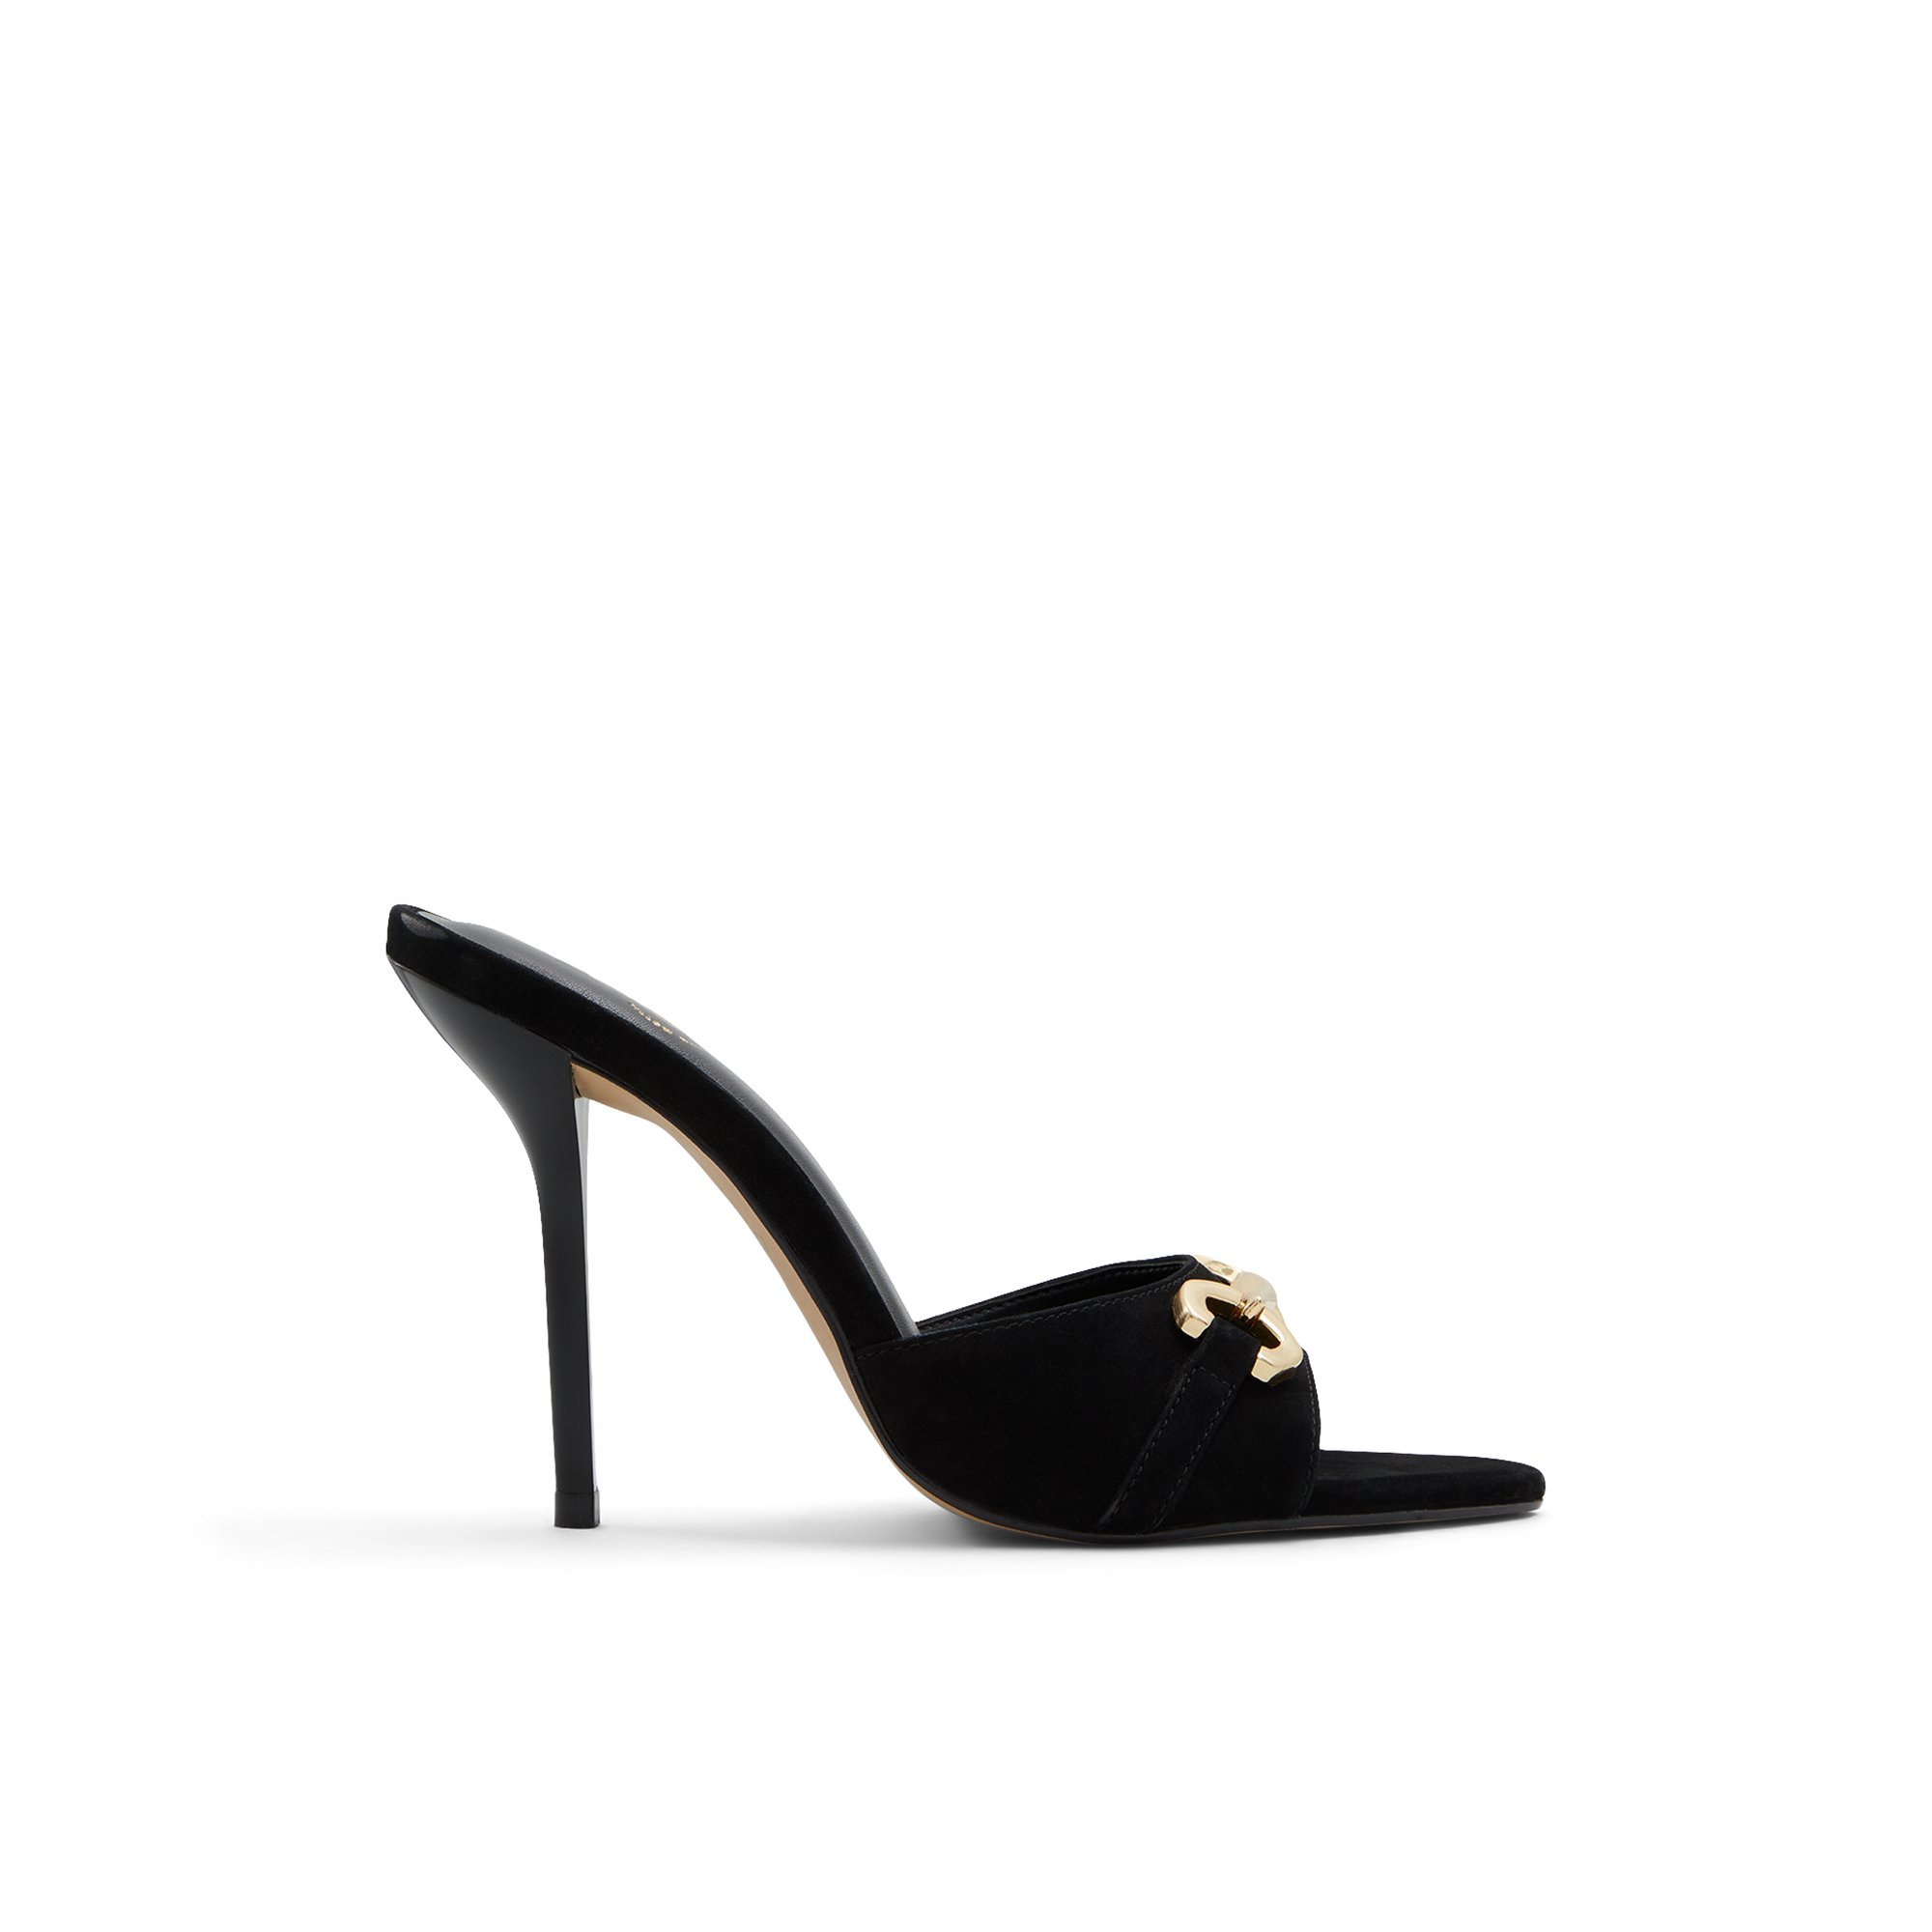 ALDO Edoassi - Women's Heeled Mules Sandals - Black